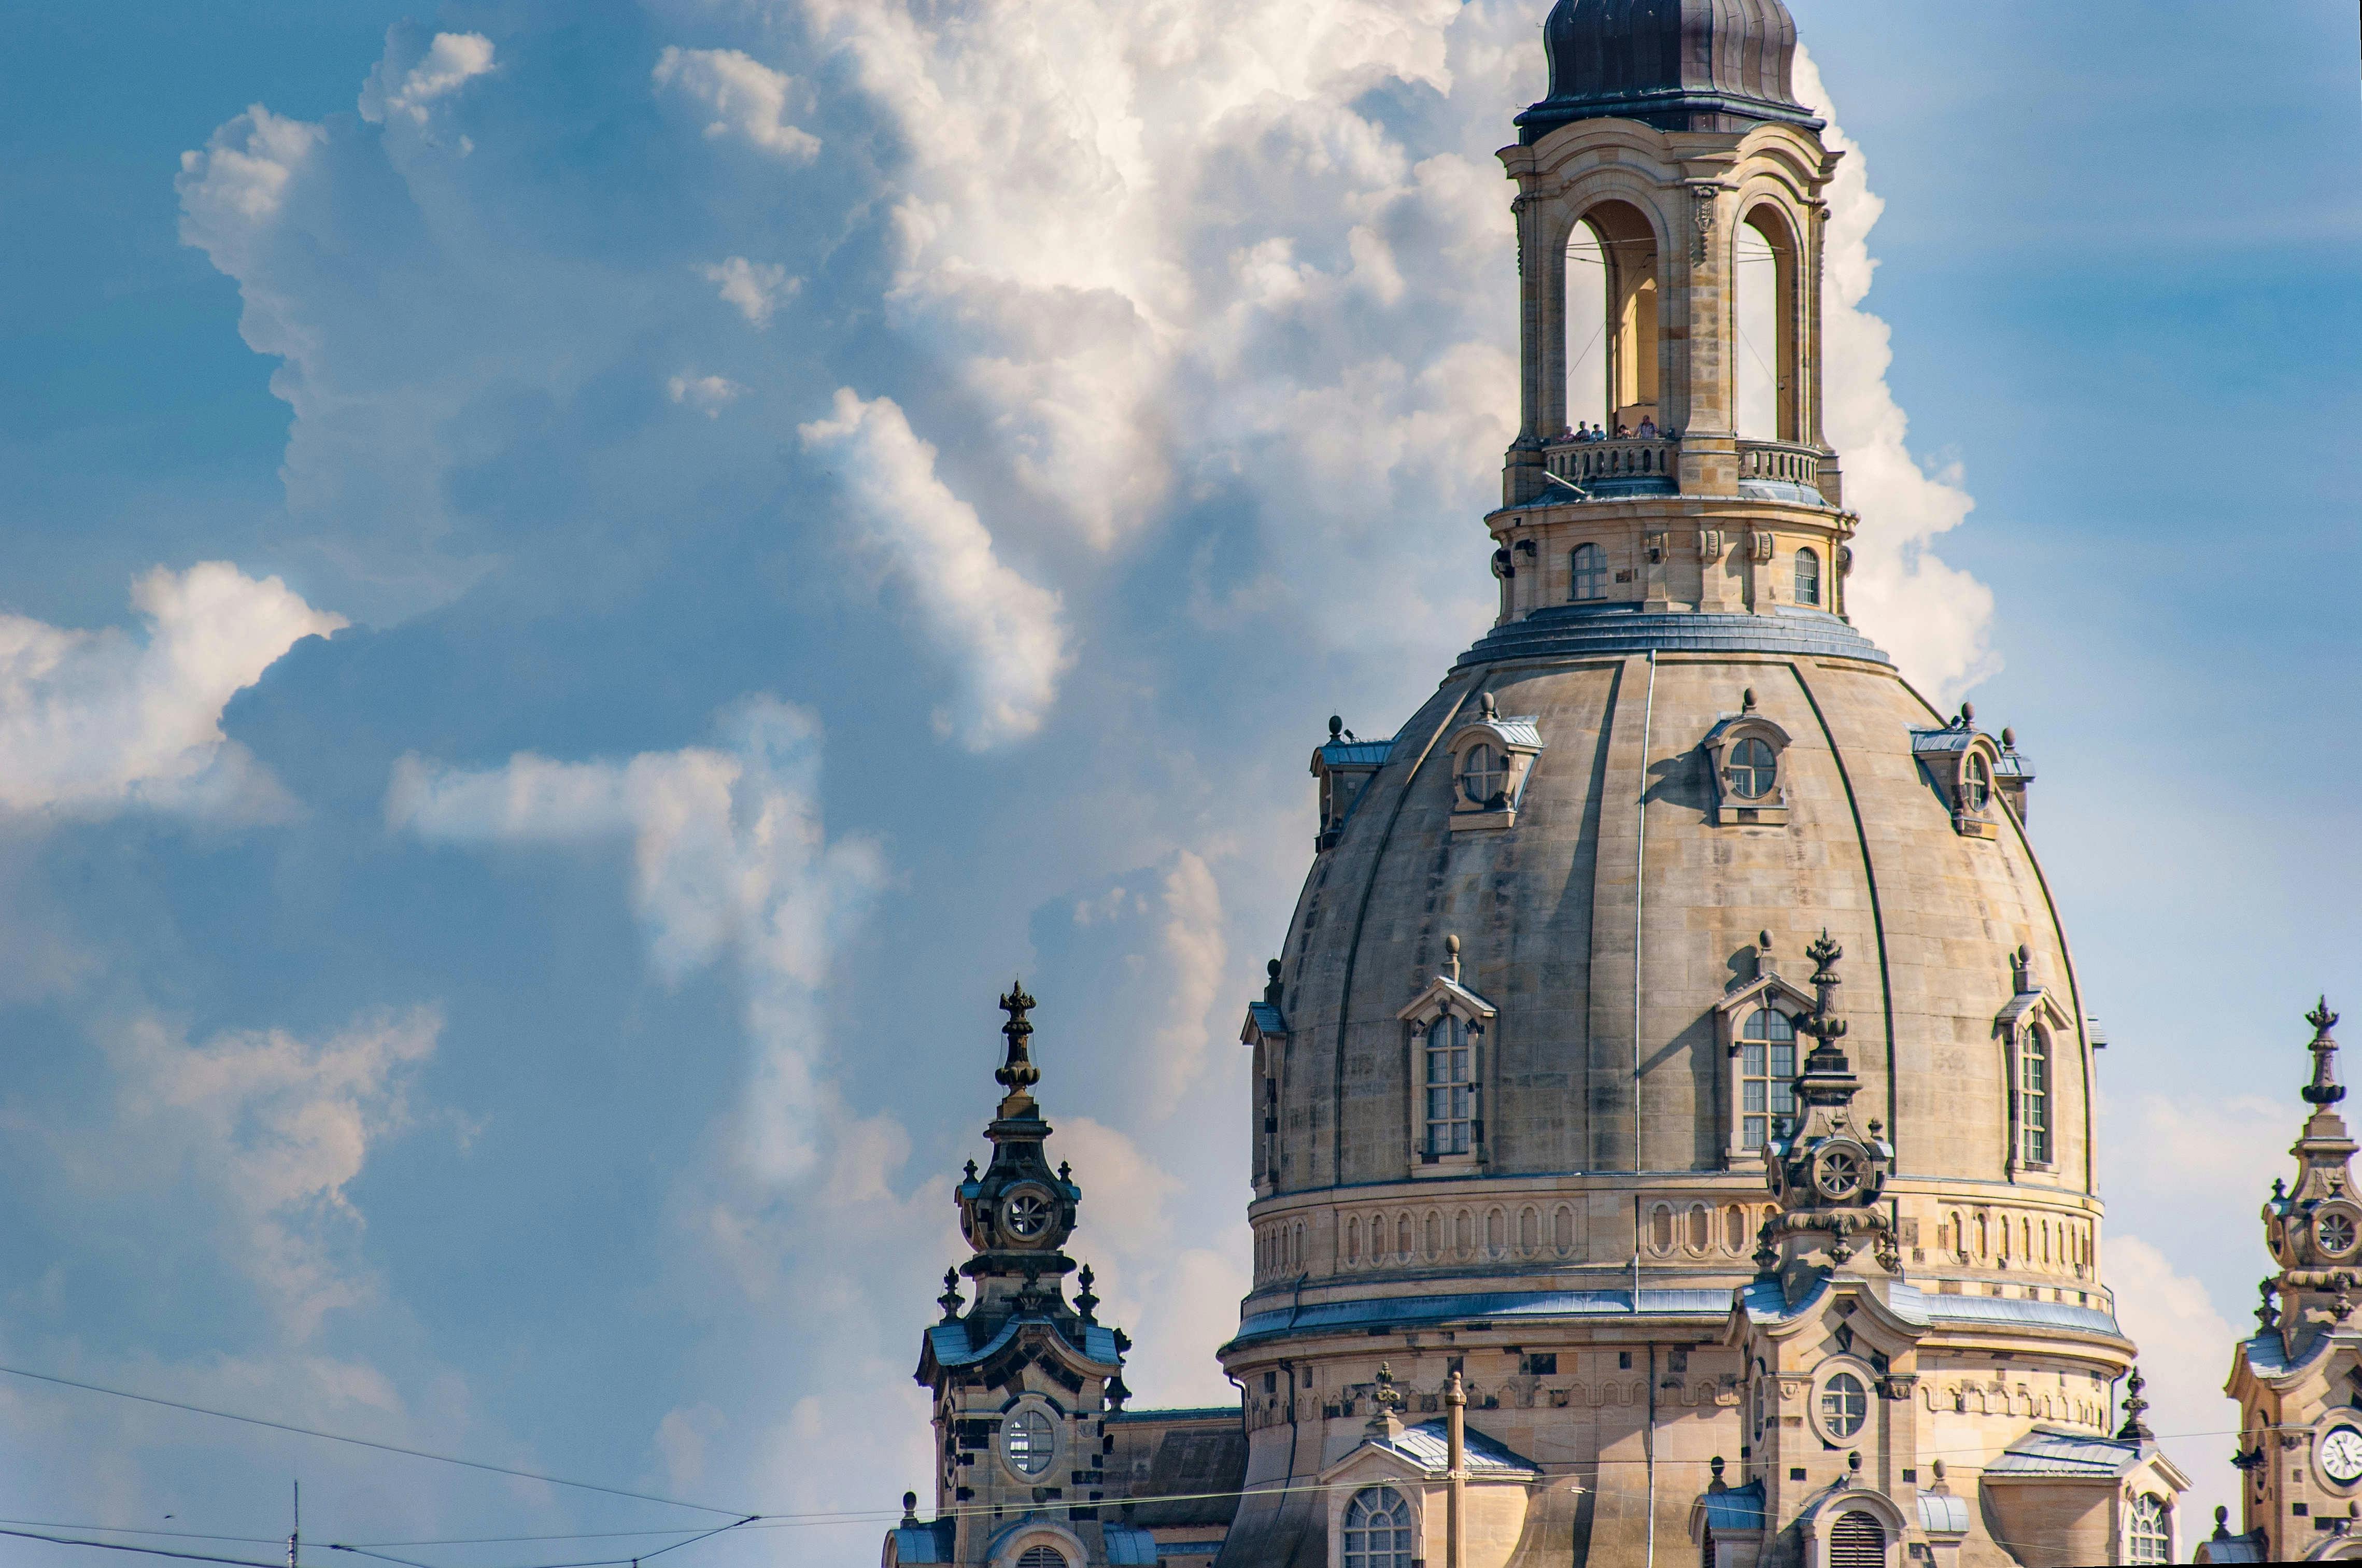 Führung durch die Frauenkirche und ihre Galerien in Dresden